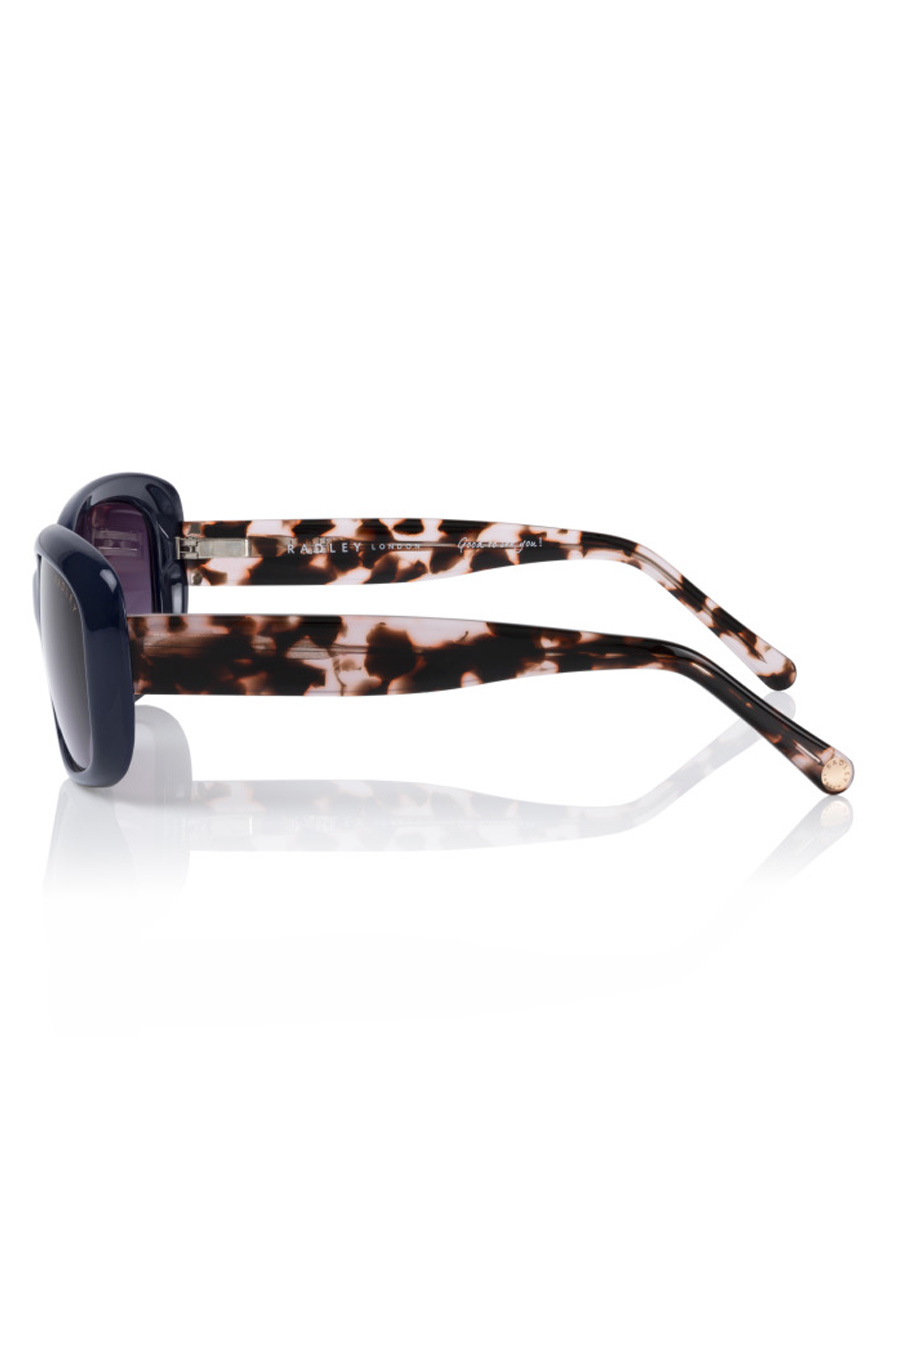 Солнечные очки RADLEY RDS-MARYBETH-106